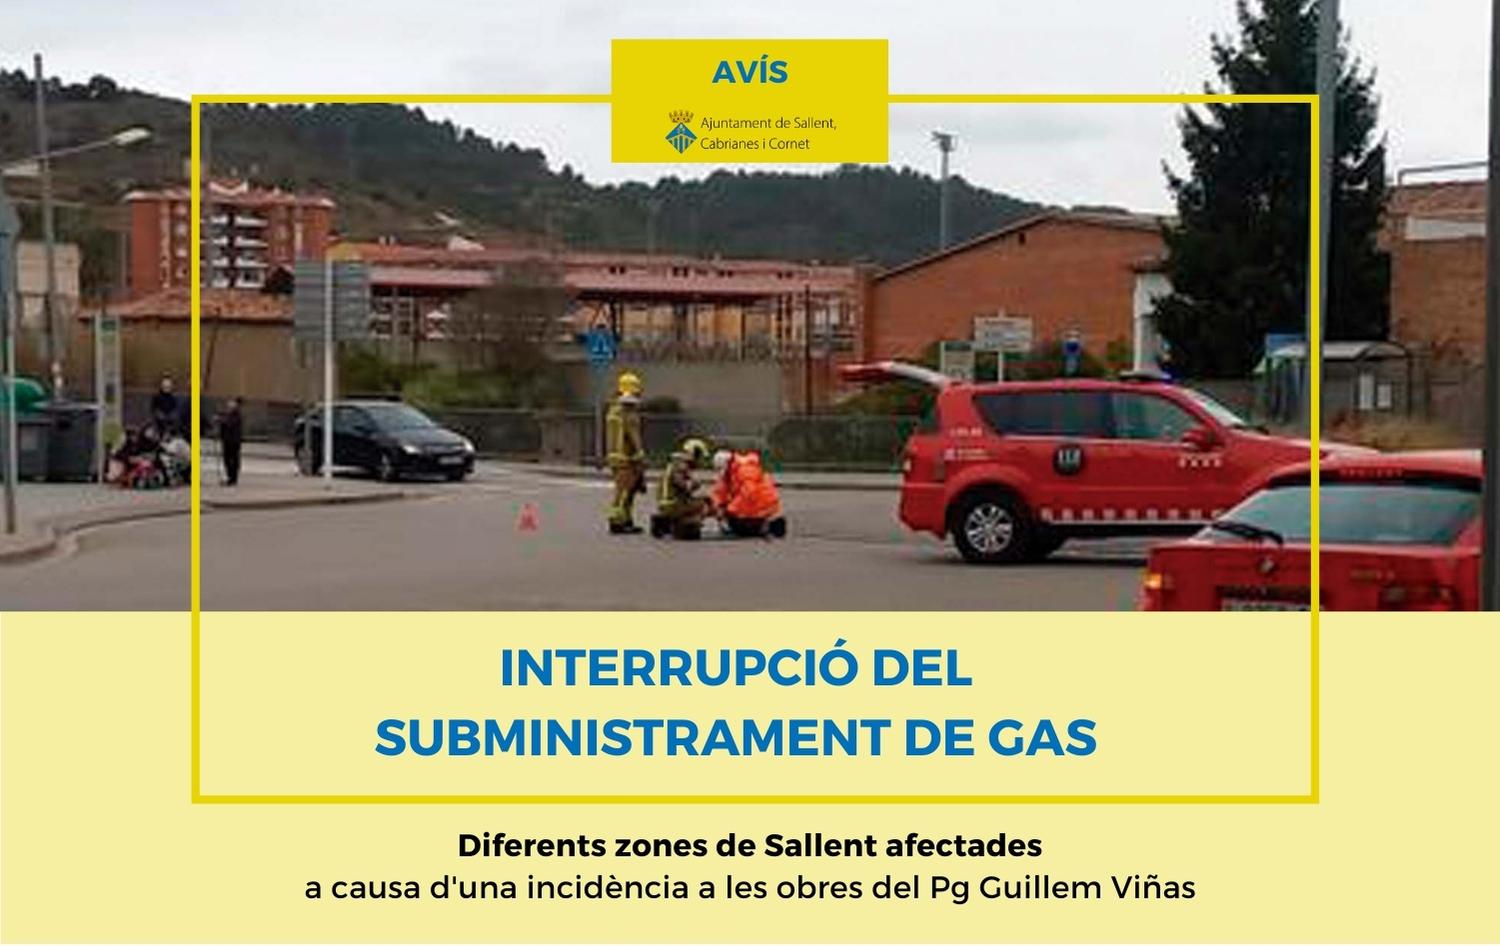 Avís d'interrupció del subministrament de gas a causa d'una incidència a les obres del Passeig Guillem Viñas